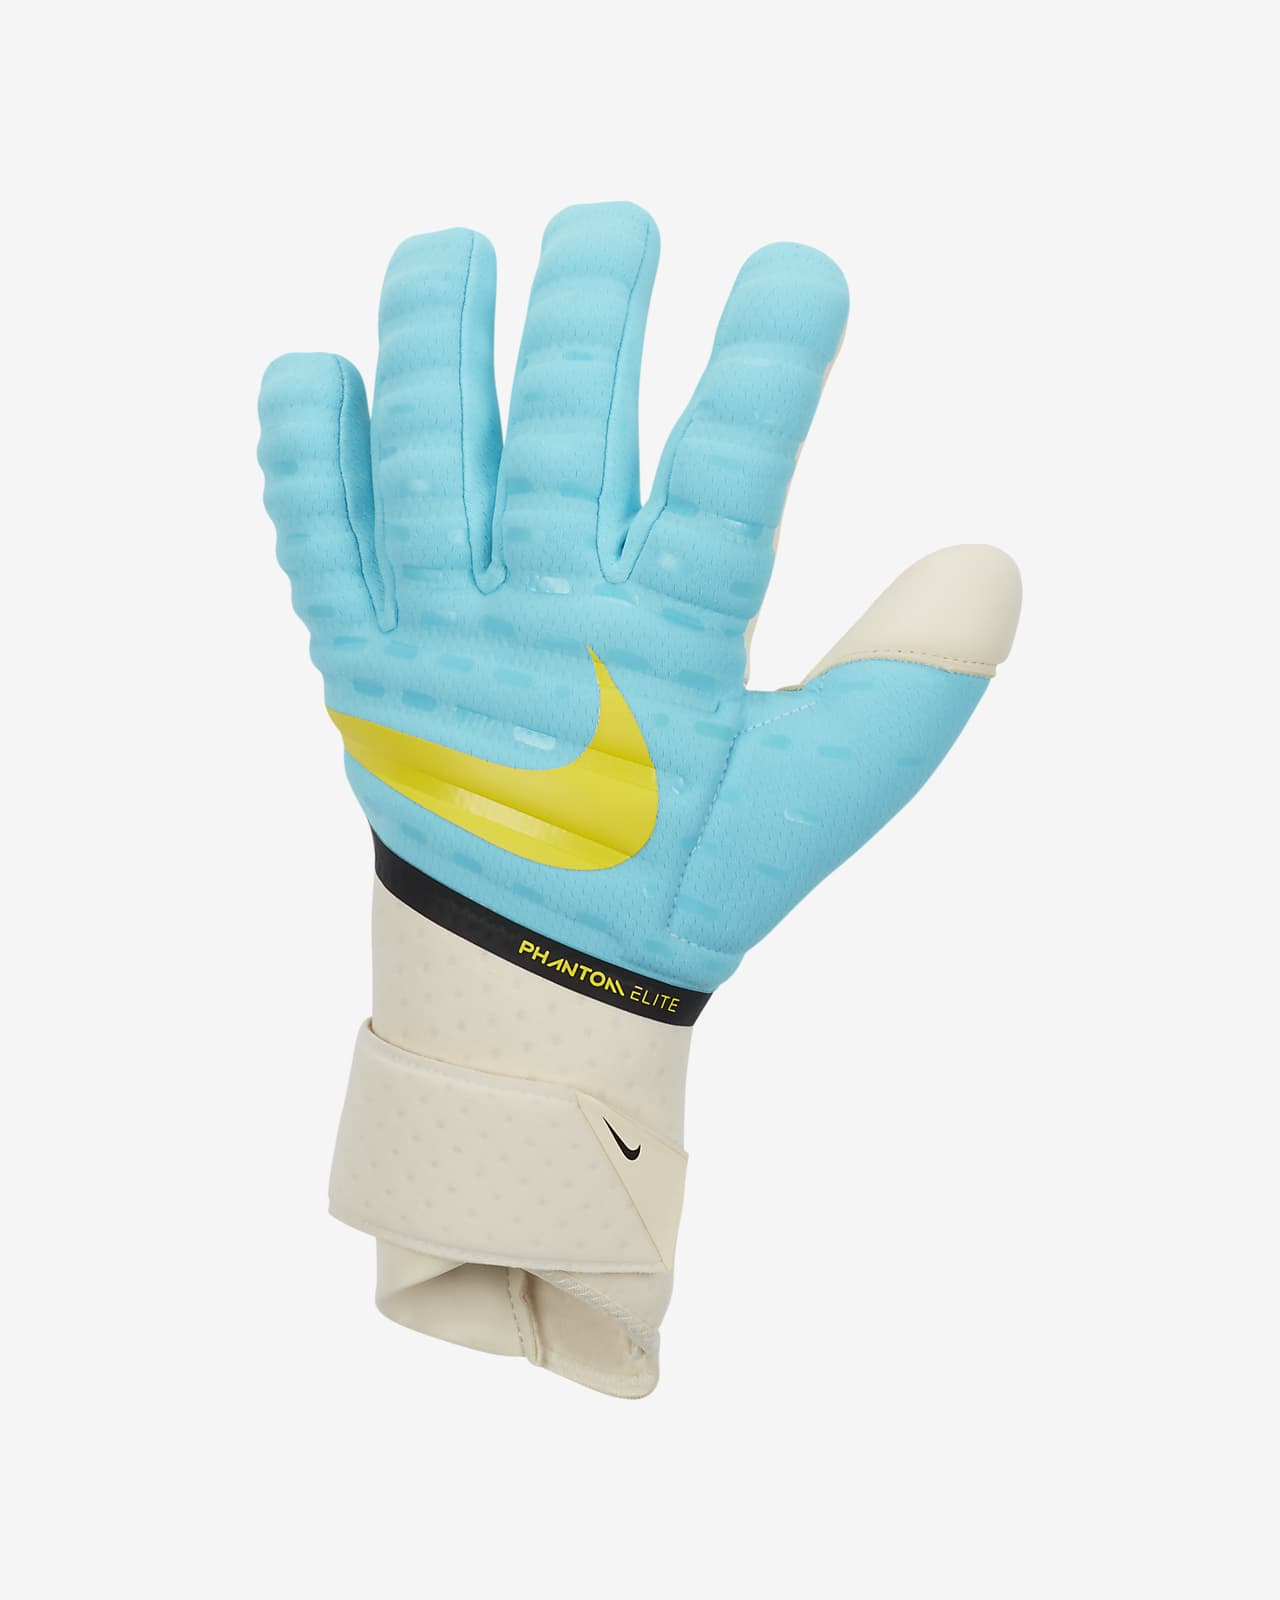 Phantom Elite Goalkeeper Football Gloves